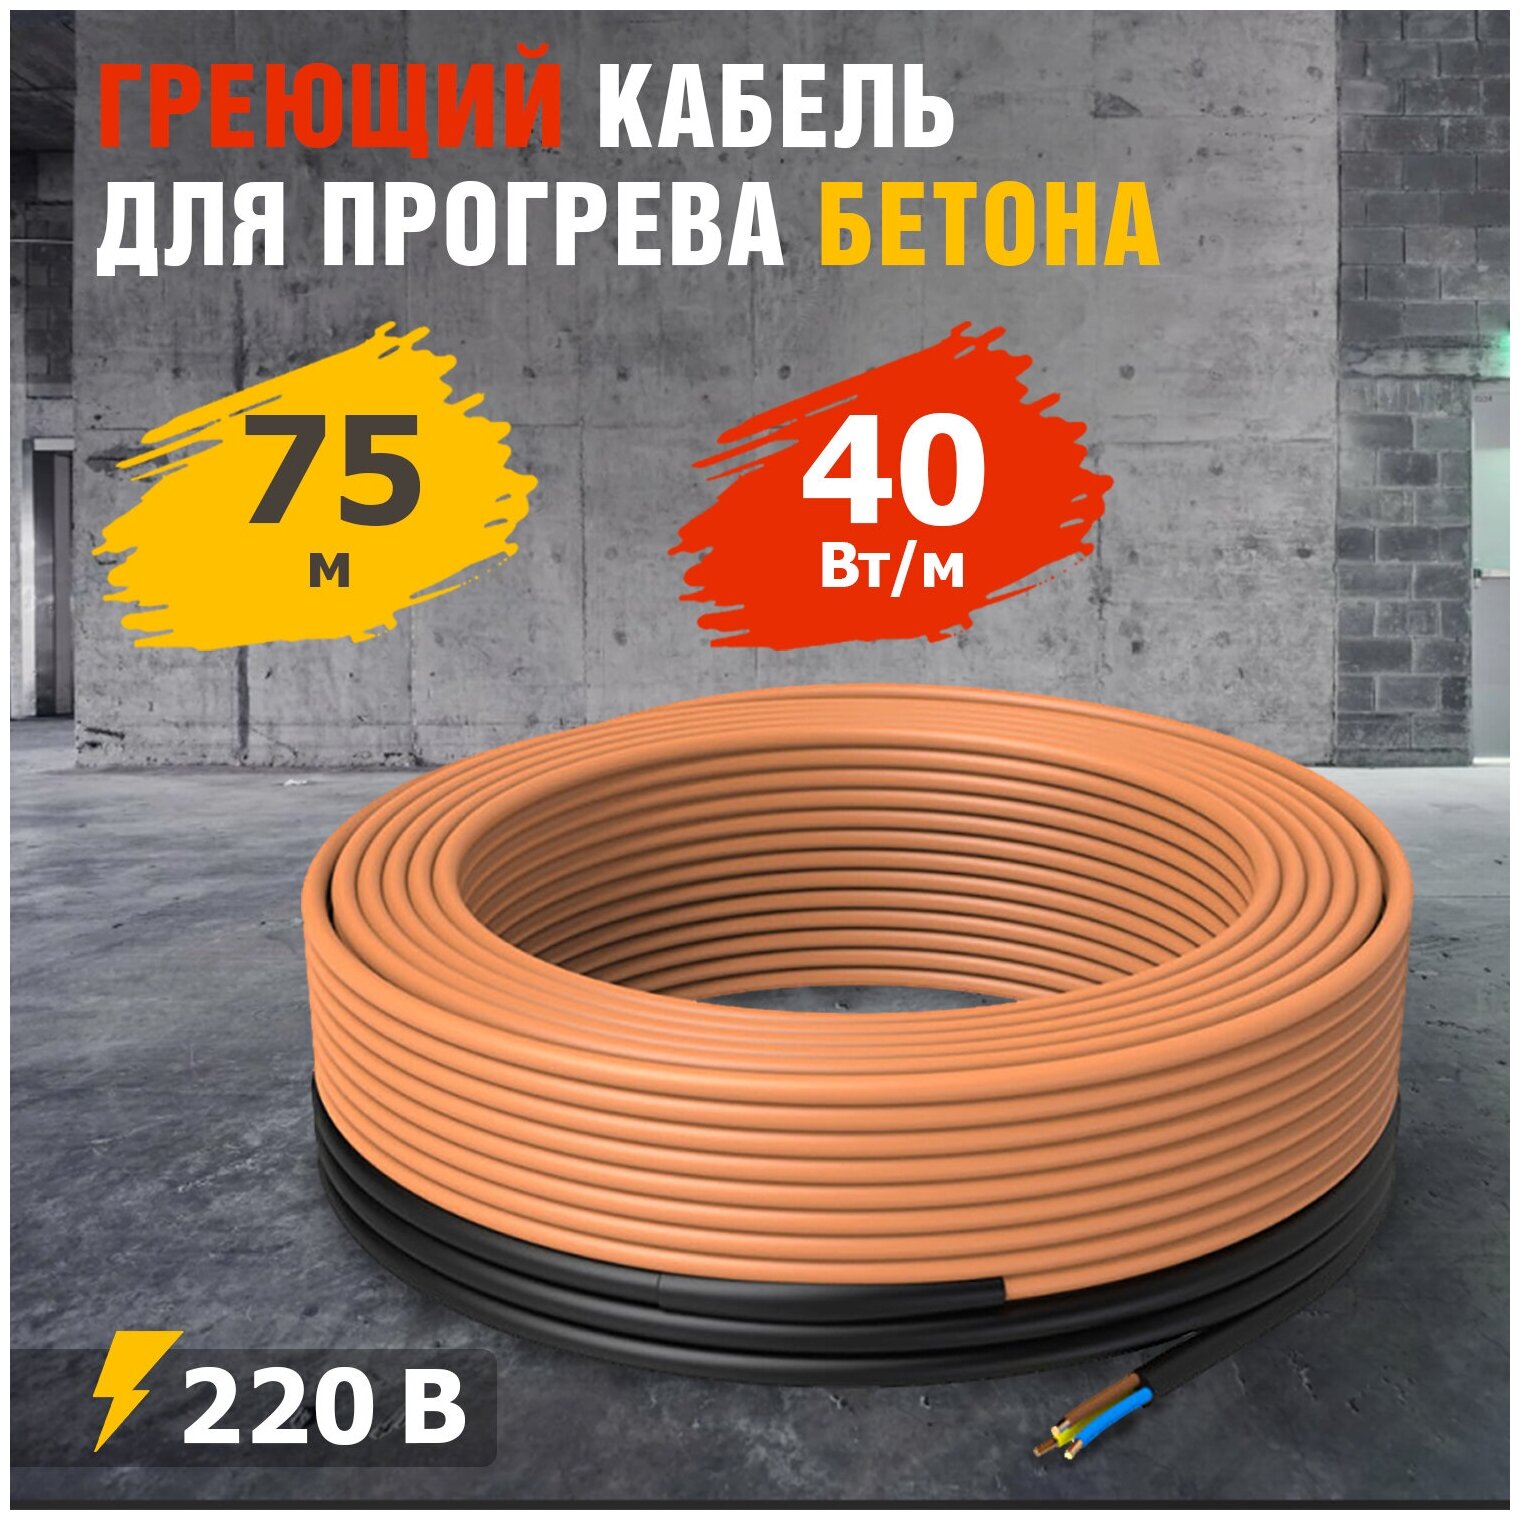 Греющий кабель для прогрева бетона 40-75/75 м 1шт